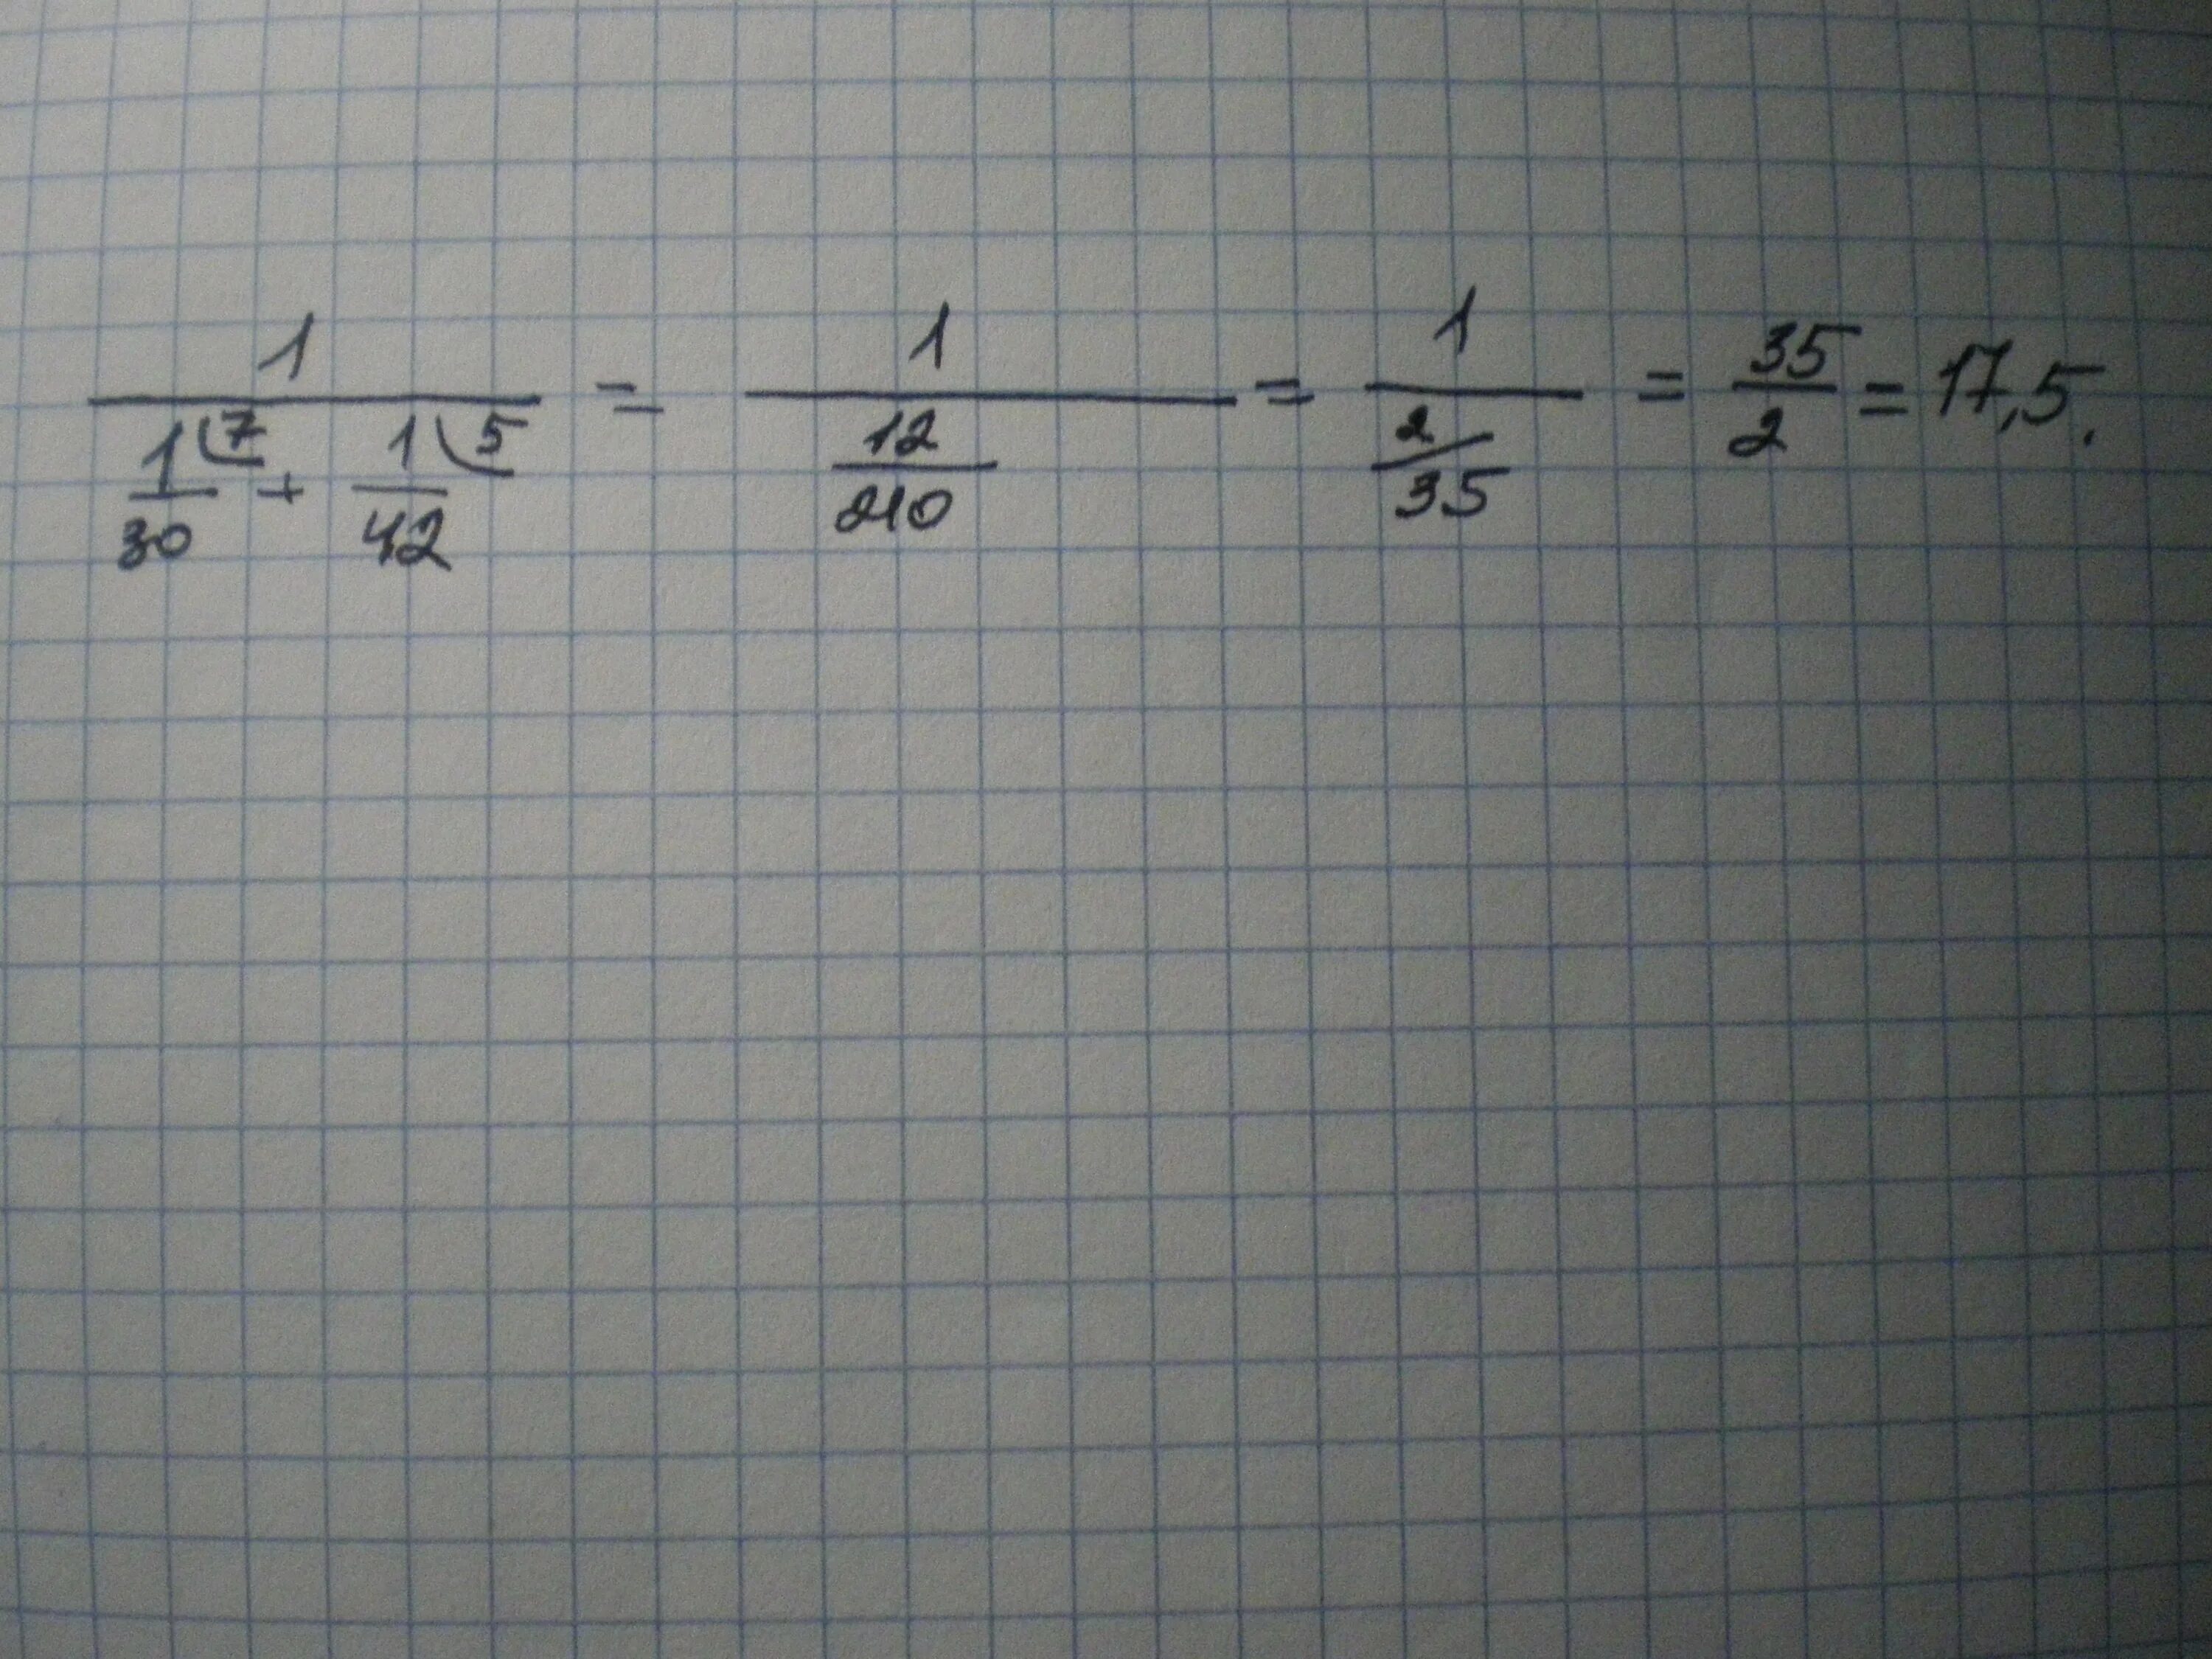 42 30 5 ответ. 1/1/30+1/42 Решение. 1 Деленное на 1/30+1/42. 1/1/30+1/42. Найдите значение выражения 1/1/30+1/42.